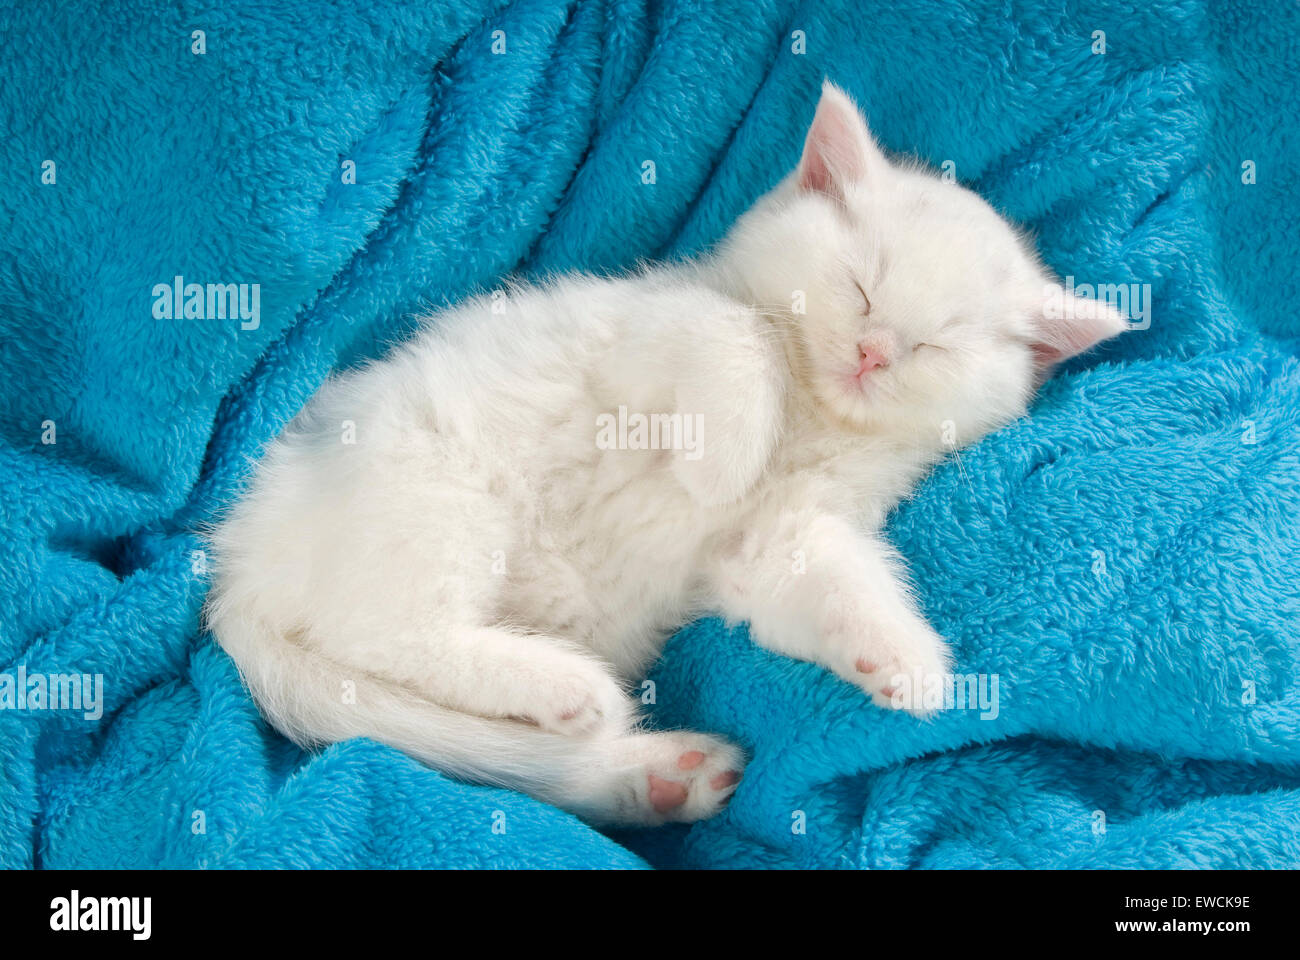 British Longhair chat. Chaton blanc dormir sur une couverture bleue. Allemagne Banque D'Images